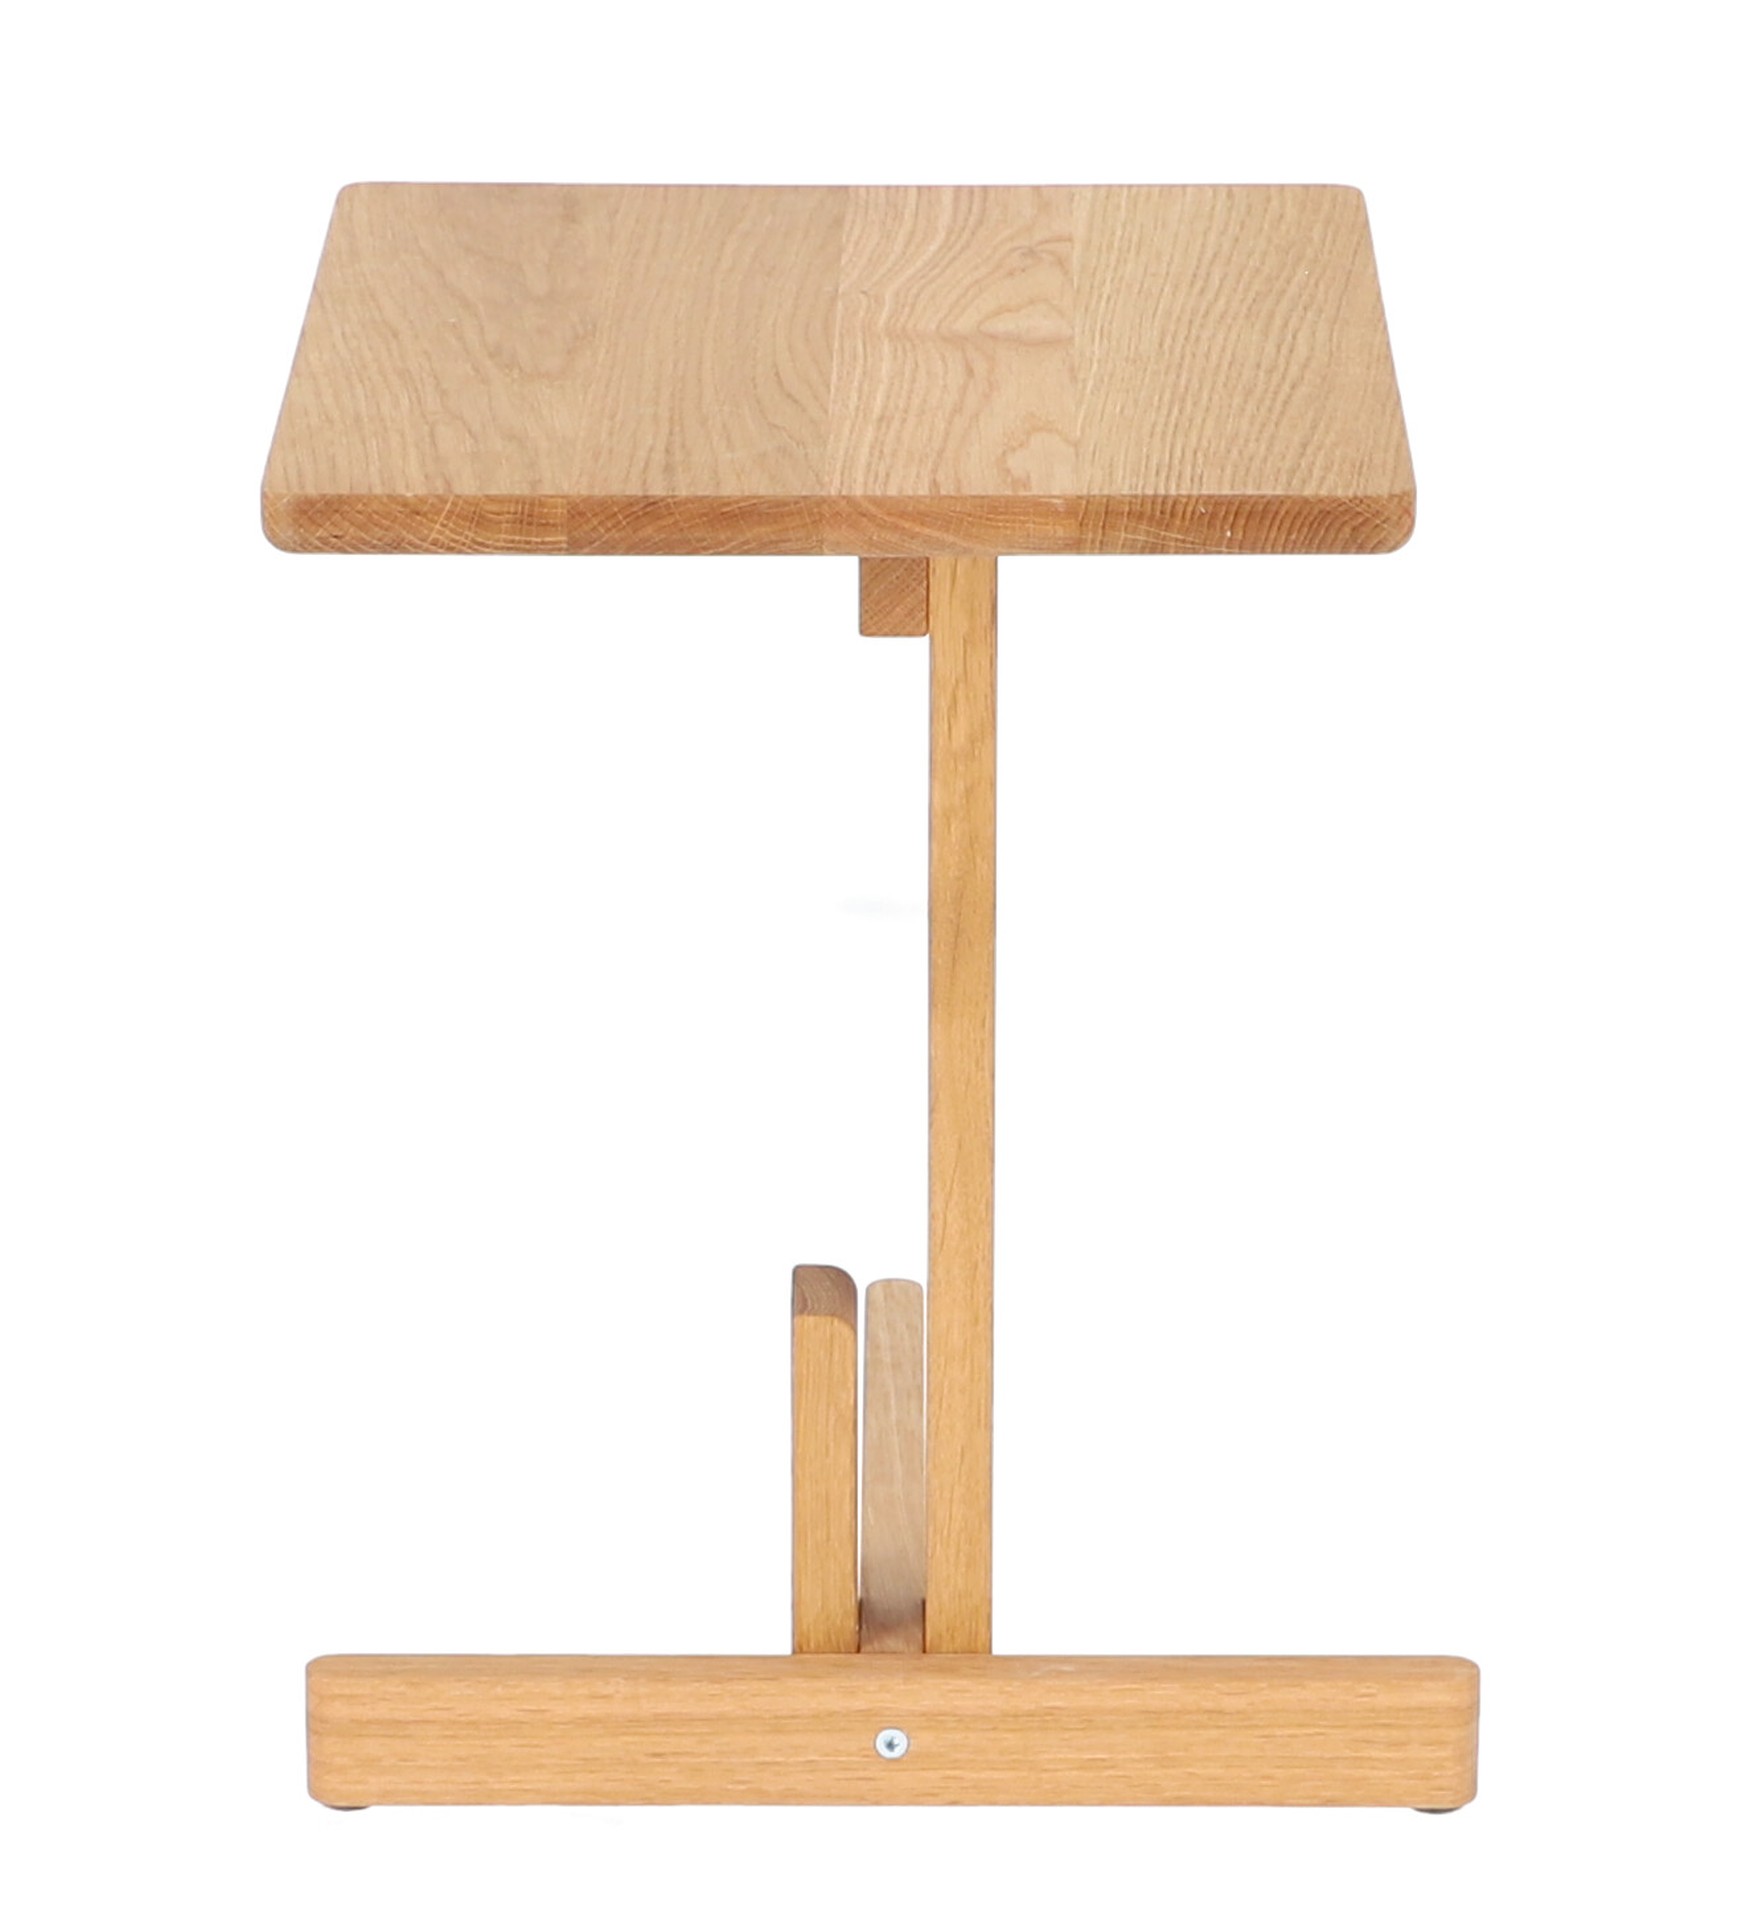 Der schlichte Beistelltisch Hardy wurde aus Eichenholz gefertigt. Besonders auffällig ist seine besondere Form. Der Tisch ist ein Produkt der Marke Jan Kurtz.